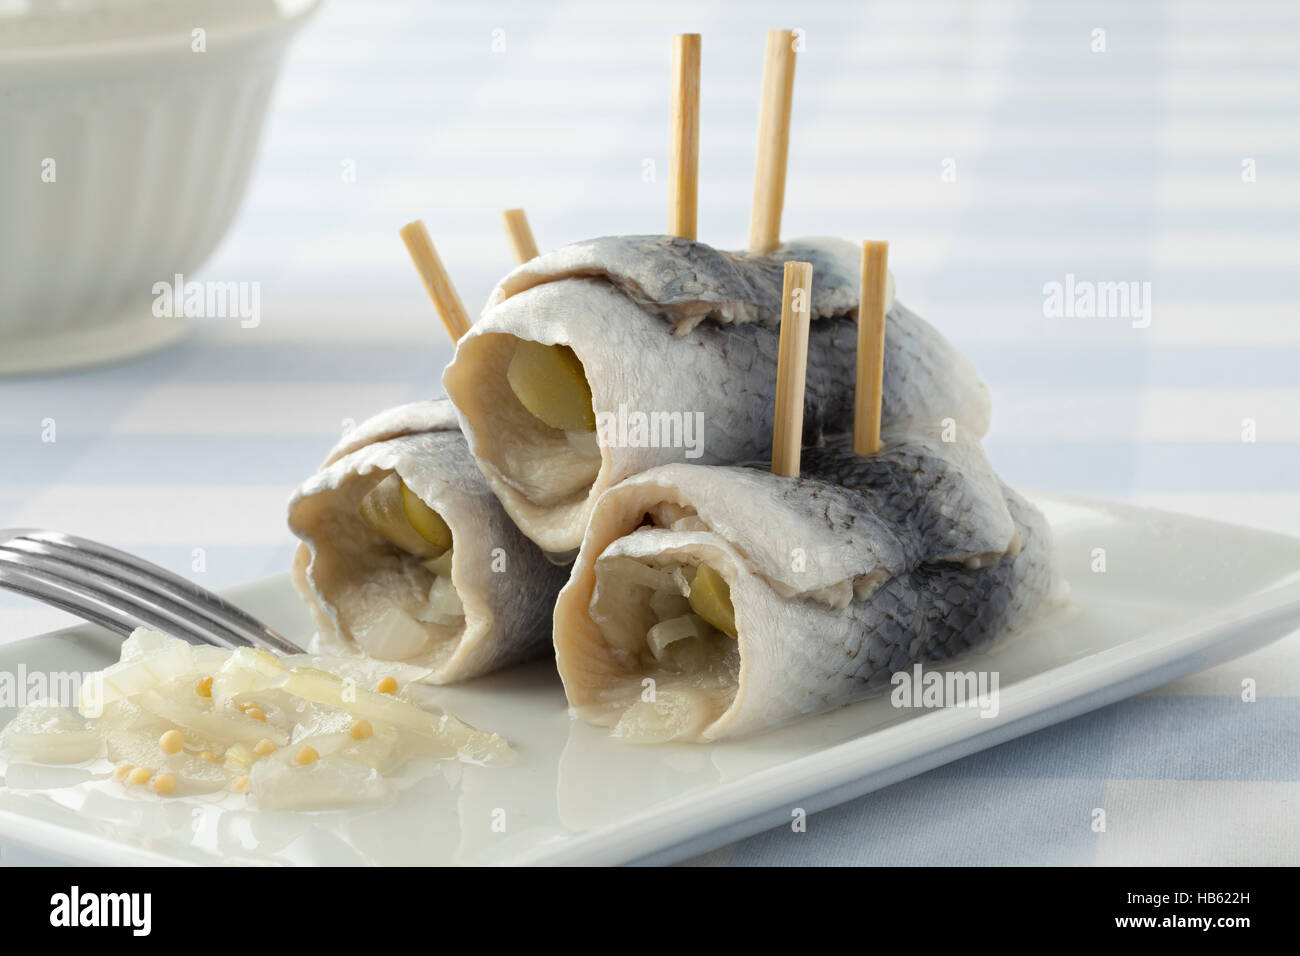 Rollmops traditionnels, filets de harengs marinés farcis,sur un plat Banque D'Images